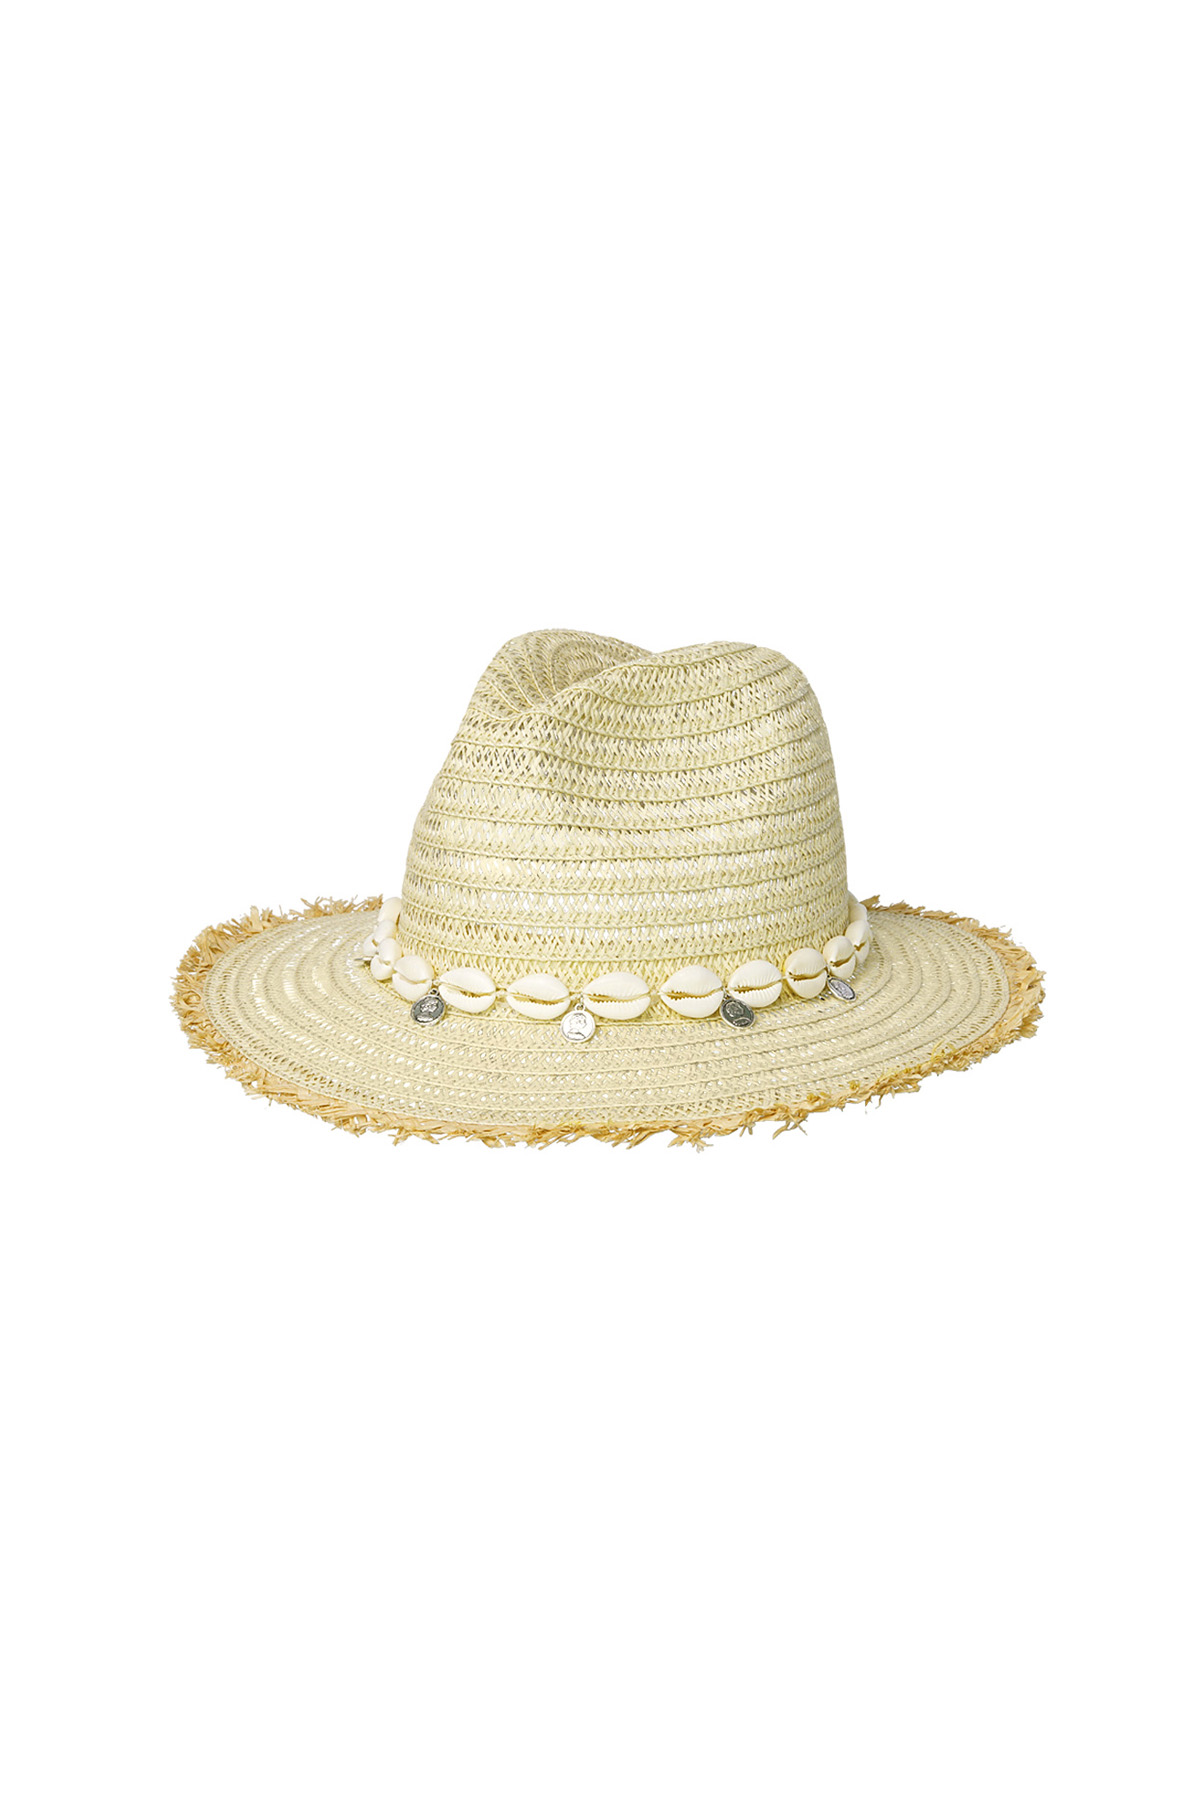 Conchas de sombrero de verano - Papel blanco roto